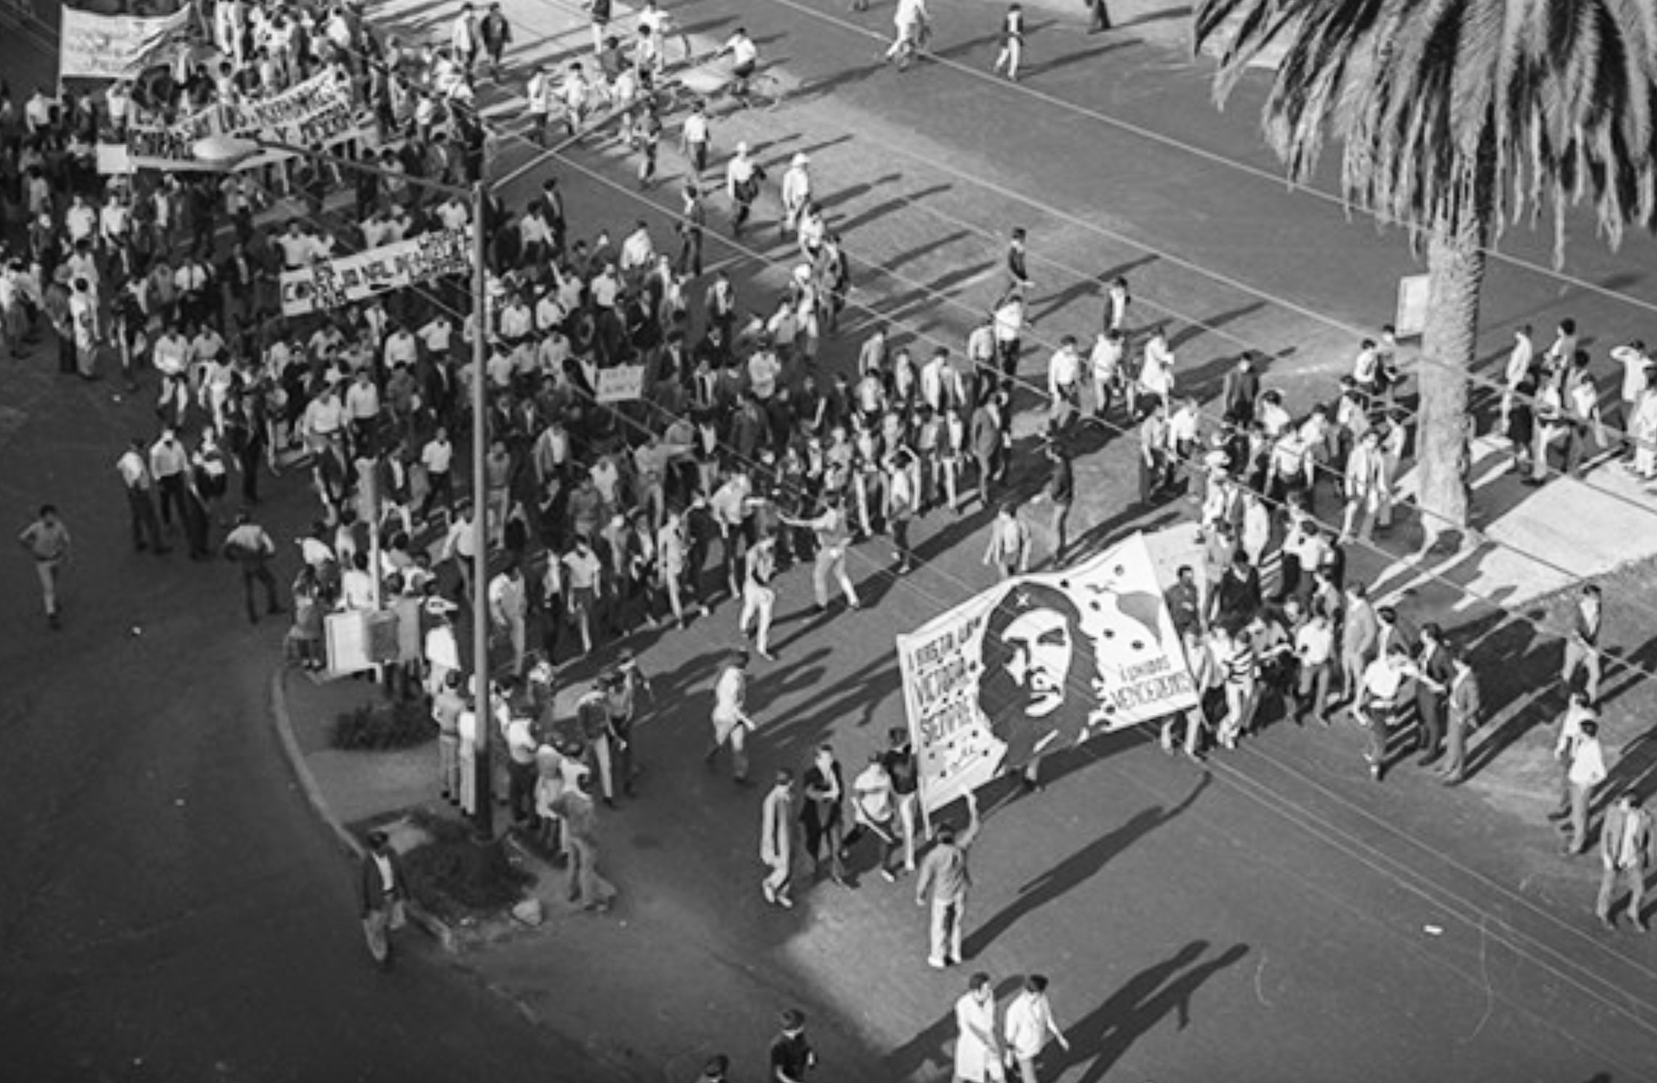 En 1968, los estudiantes desafiaron al gobierno de México realizando varias en las calles marchas en las que portaban carteles y pancartas con imágenes de figuras icónicas que habían desafiado a l imperialismo, como Ernesto” “Che” Guevara”, muerto en Bolivia en 1967 por fuerzas estadounidenses. La imagen corresponde a una marcha el 13 de agosto de 1968 convocada por el Consejo Nacional de Huelga (CNH). Foto: Gobierno del Distrito Federal